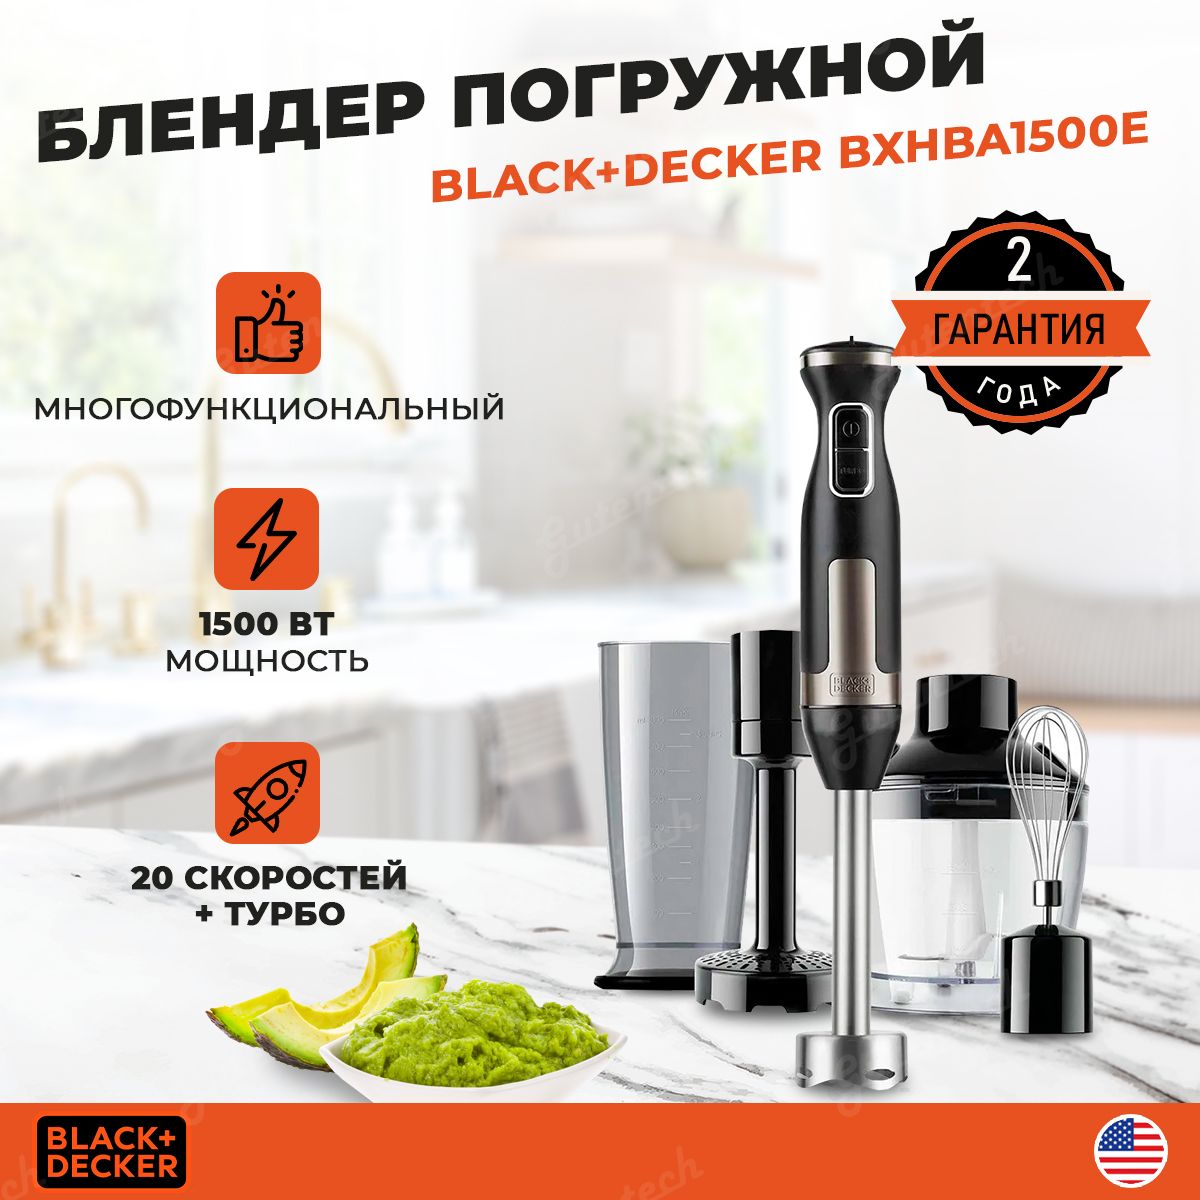 ▷ Black & Decker BXHBA1500E blender Immersion blender 1500 W Black,  Stainless steel